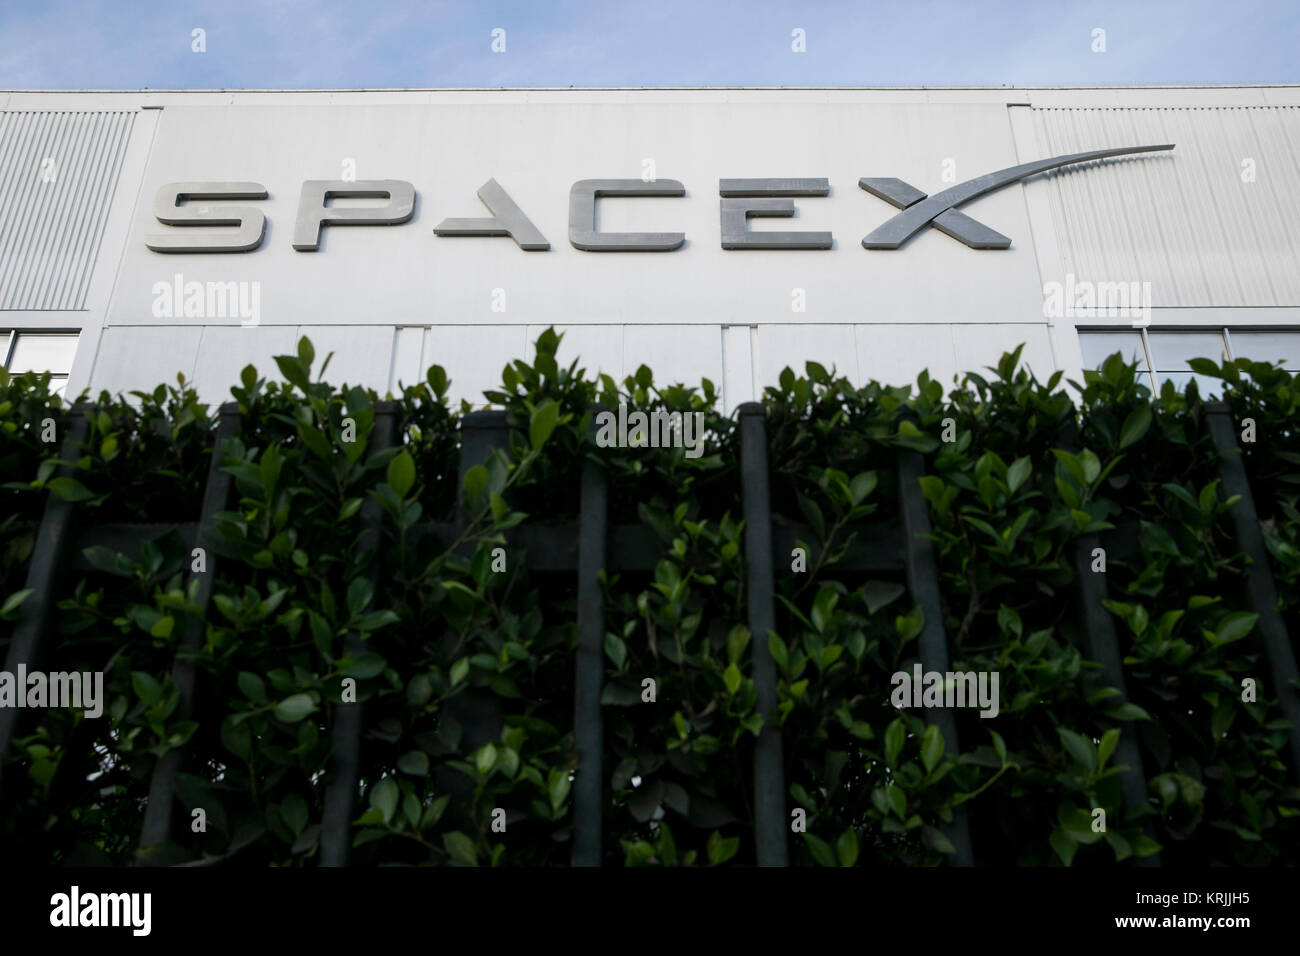 Un logo affiche à l'extérieur du quartier général de l'Exploration spatiale Technologies Corp., également connu sous le nom de SpaceX, à Hawthorne, Californie, le 10 décembre 2017. Banque D'Images